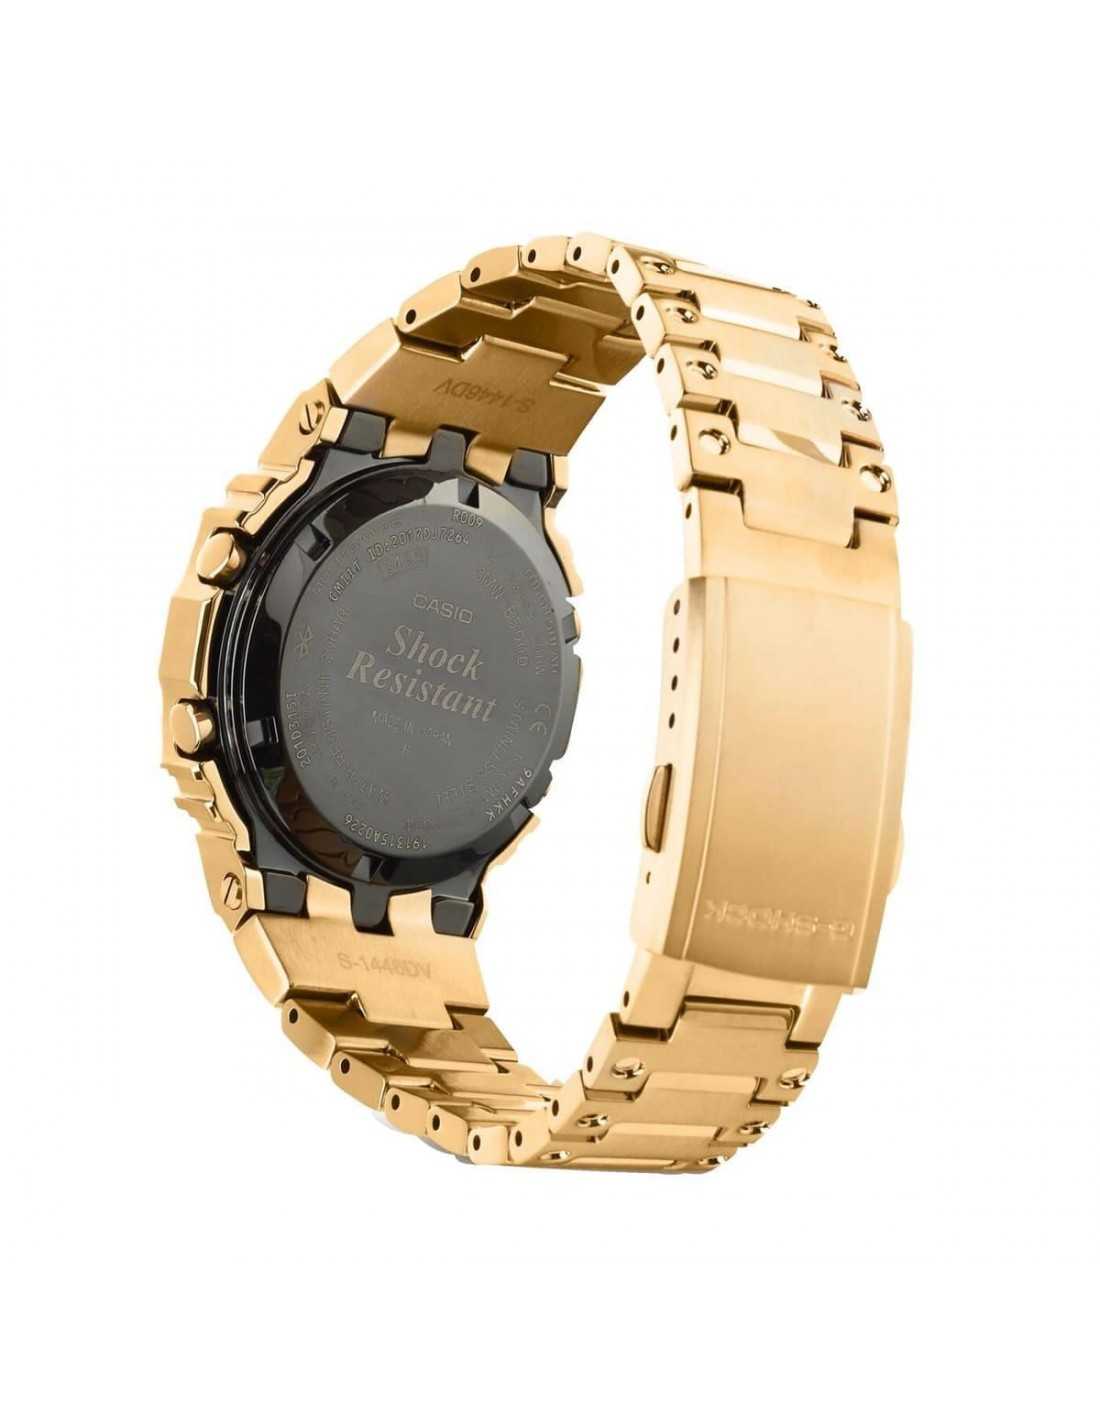 Clásico reloj Casio dorado G-SHOCK para hombre GMW-B5000GD